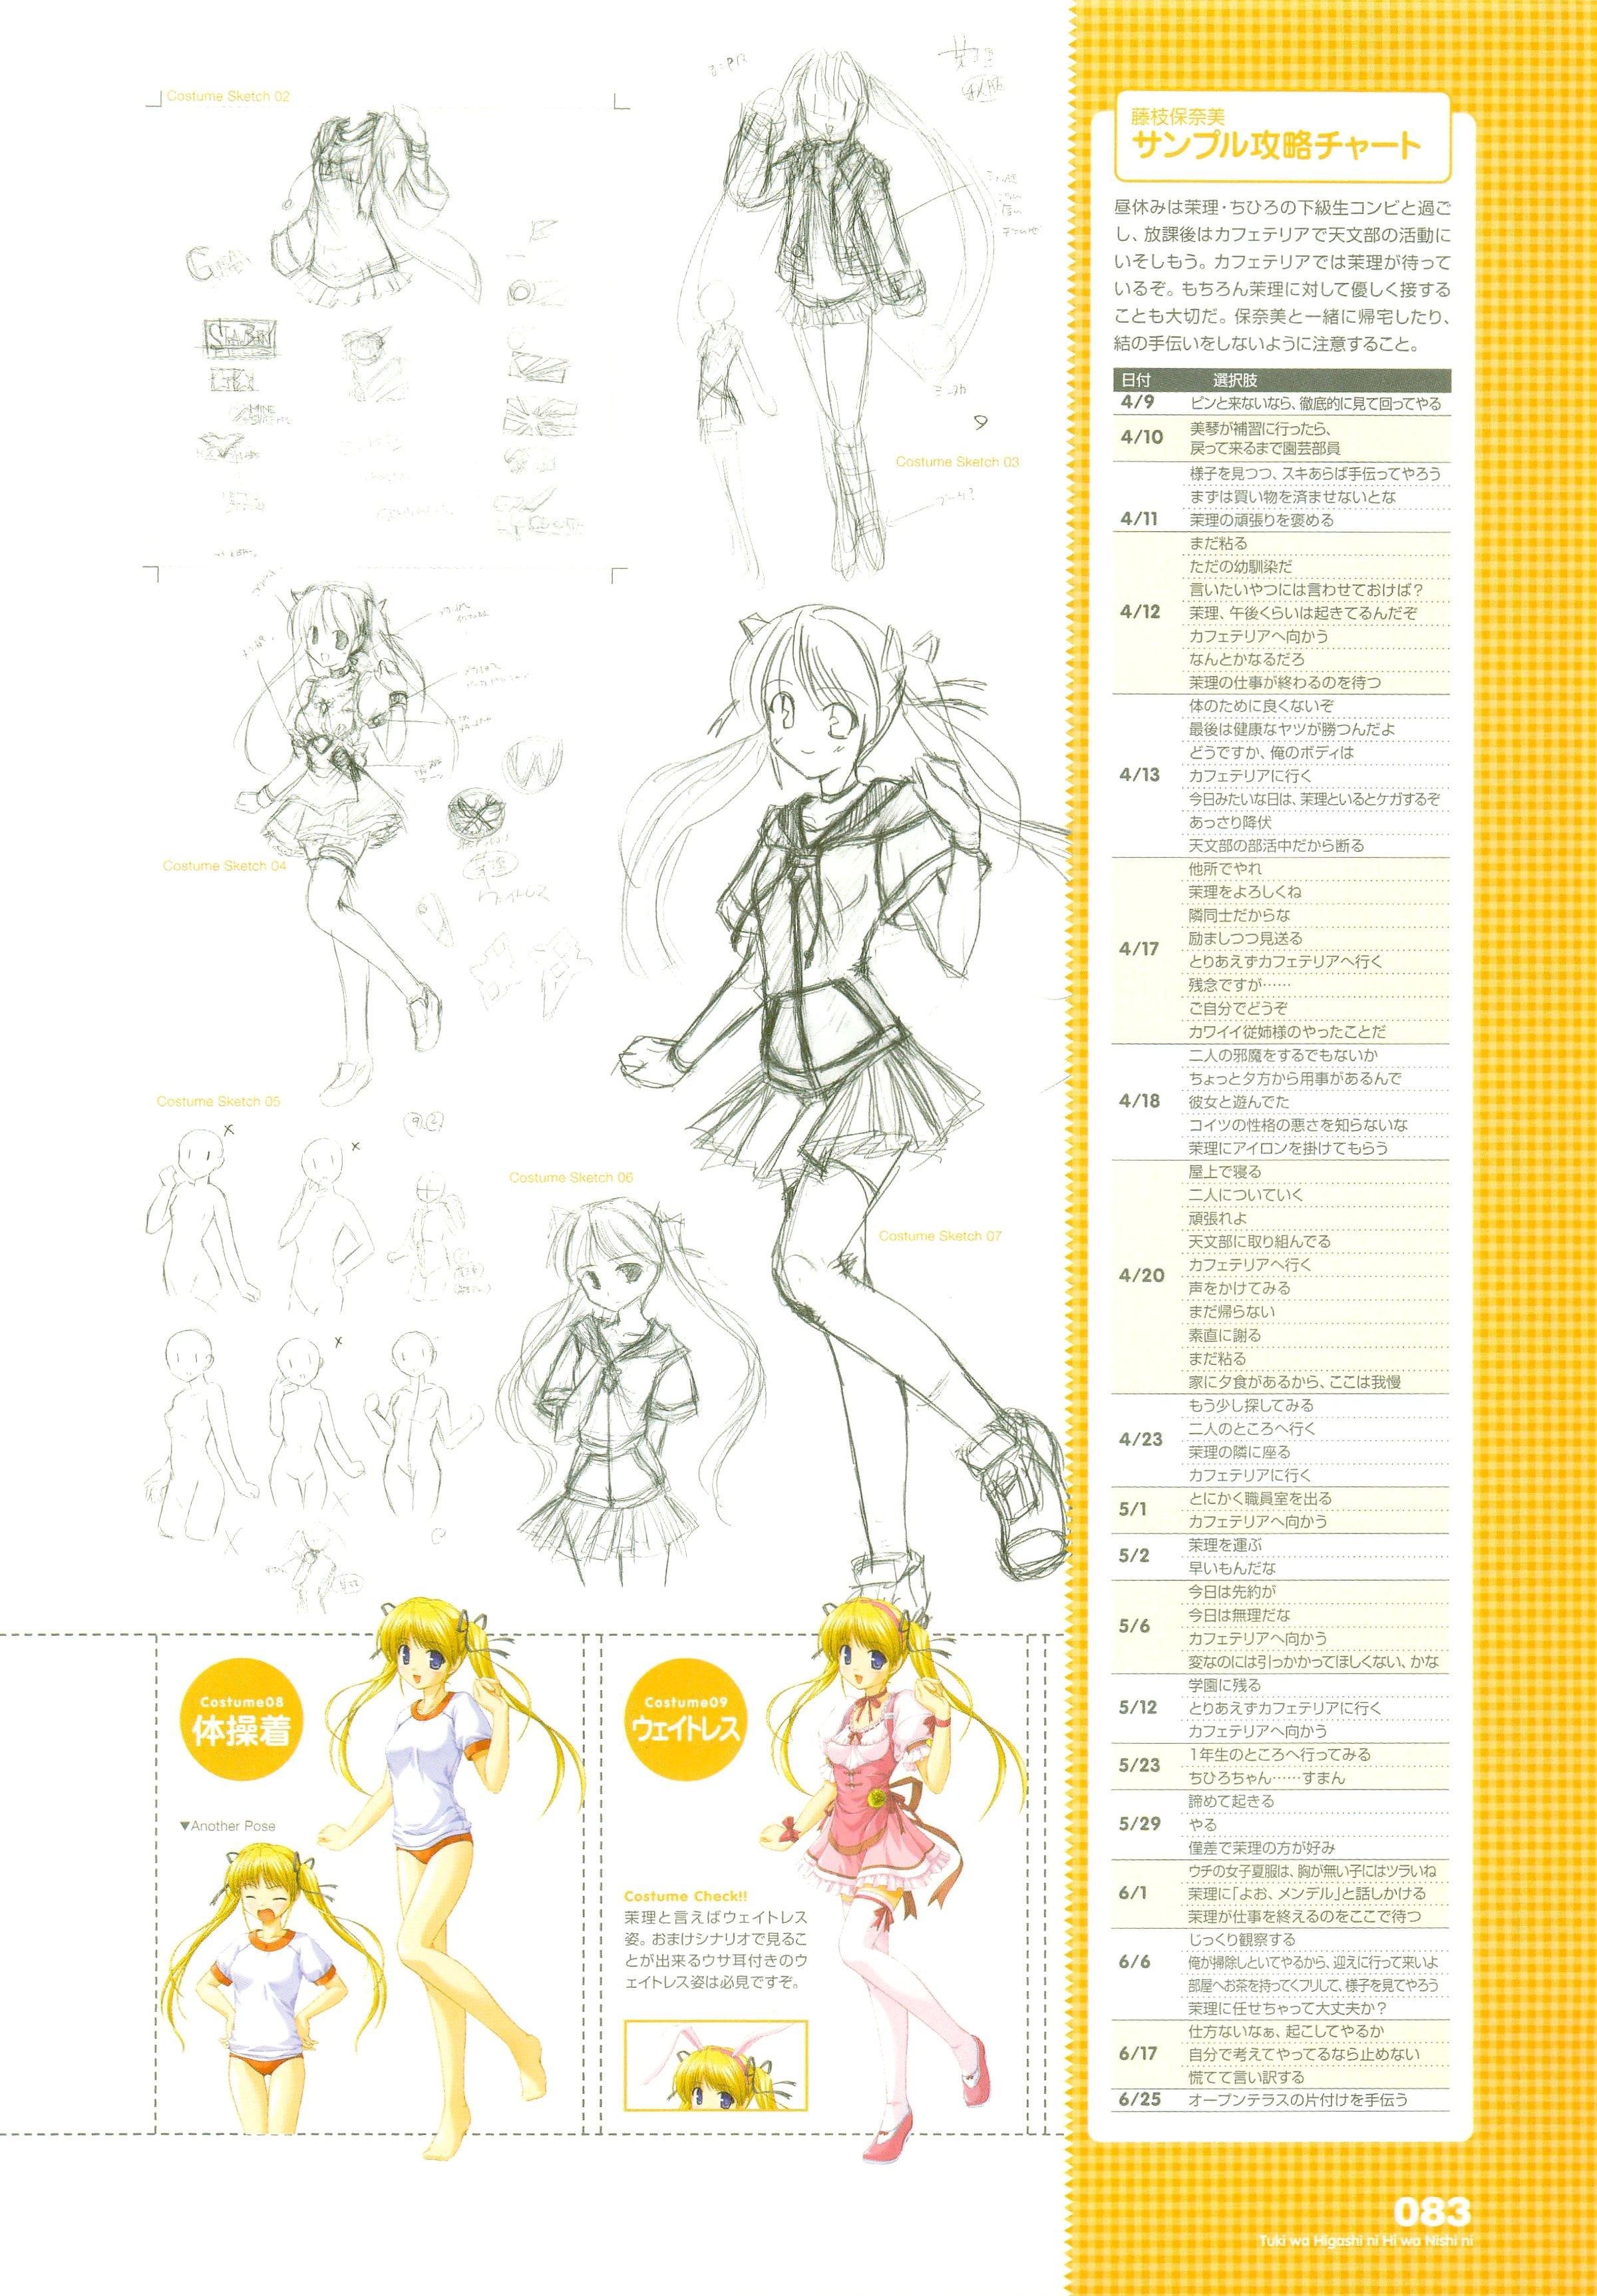 Tsuki wa Higashi ni Hi wa Nishi ni ～ Operation Sanctuary ～ Visual Fan Book 105